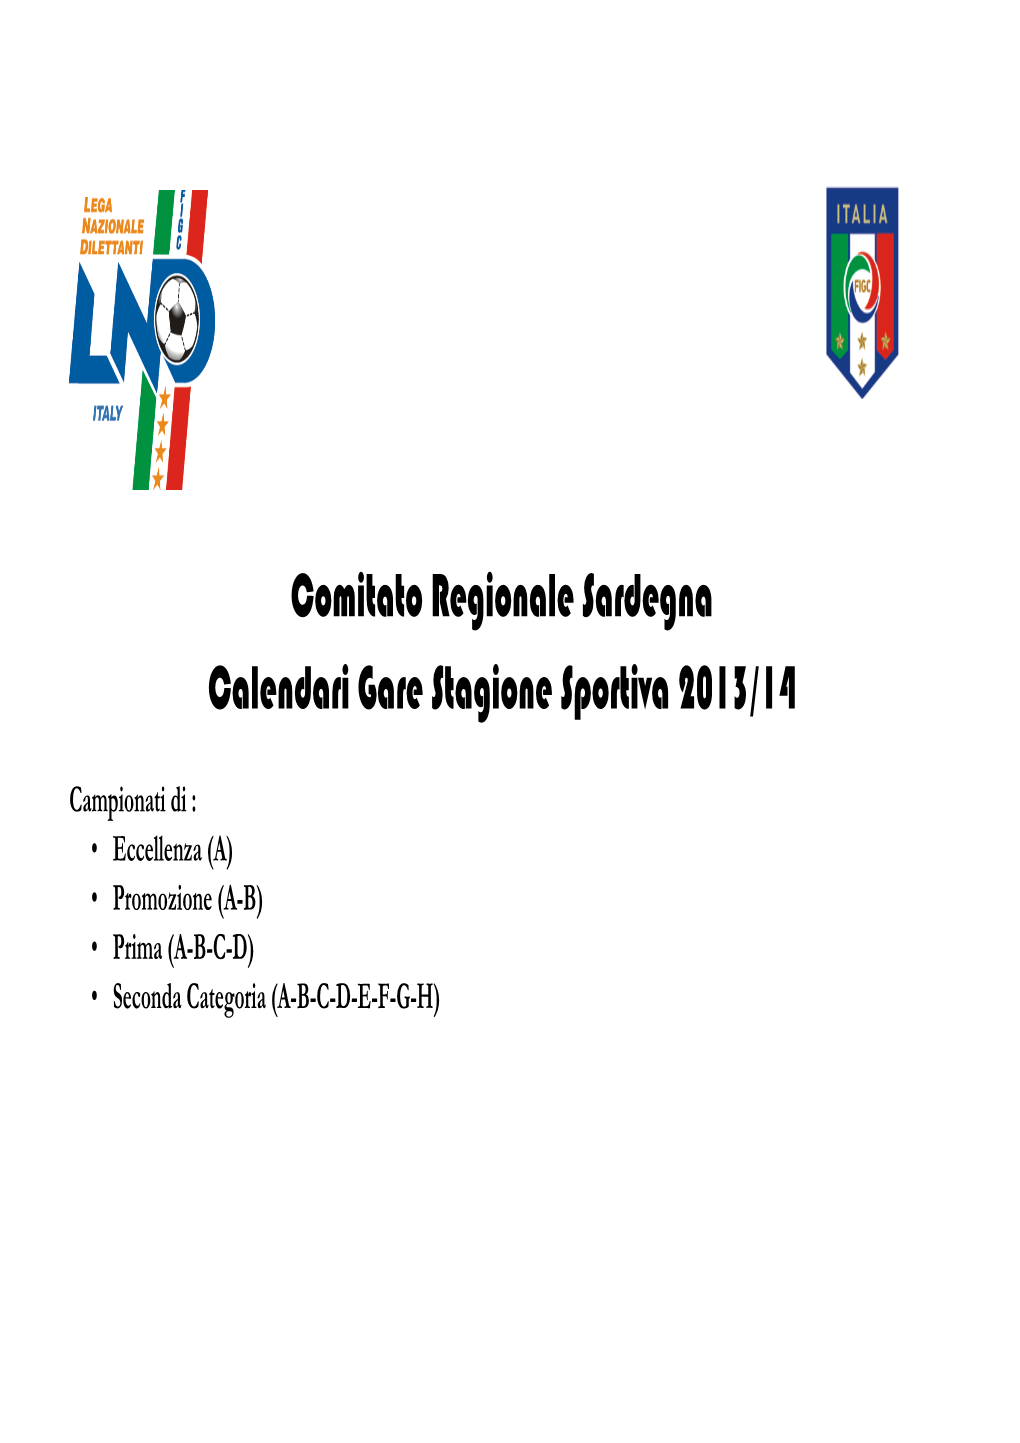 Comitato Regionale Sardegna Calendari Gare Stagione Sportiva 2013/14